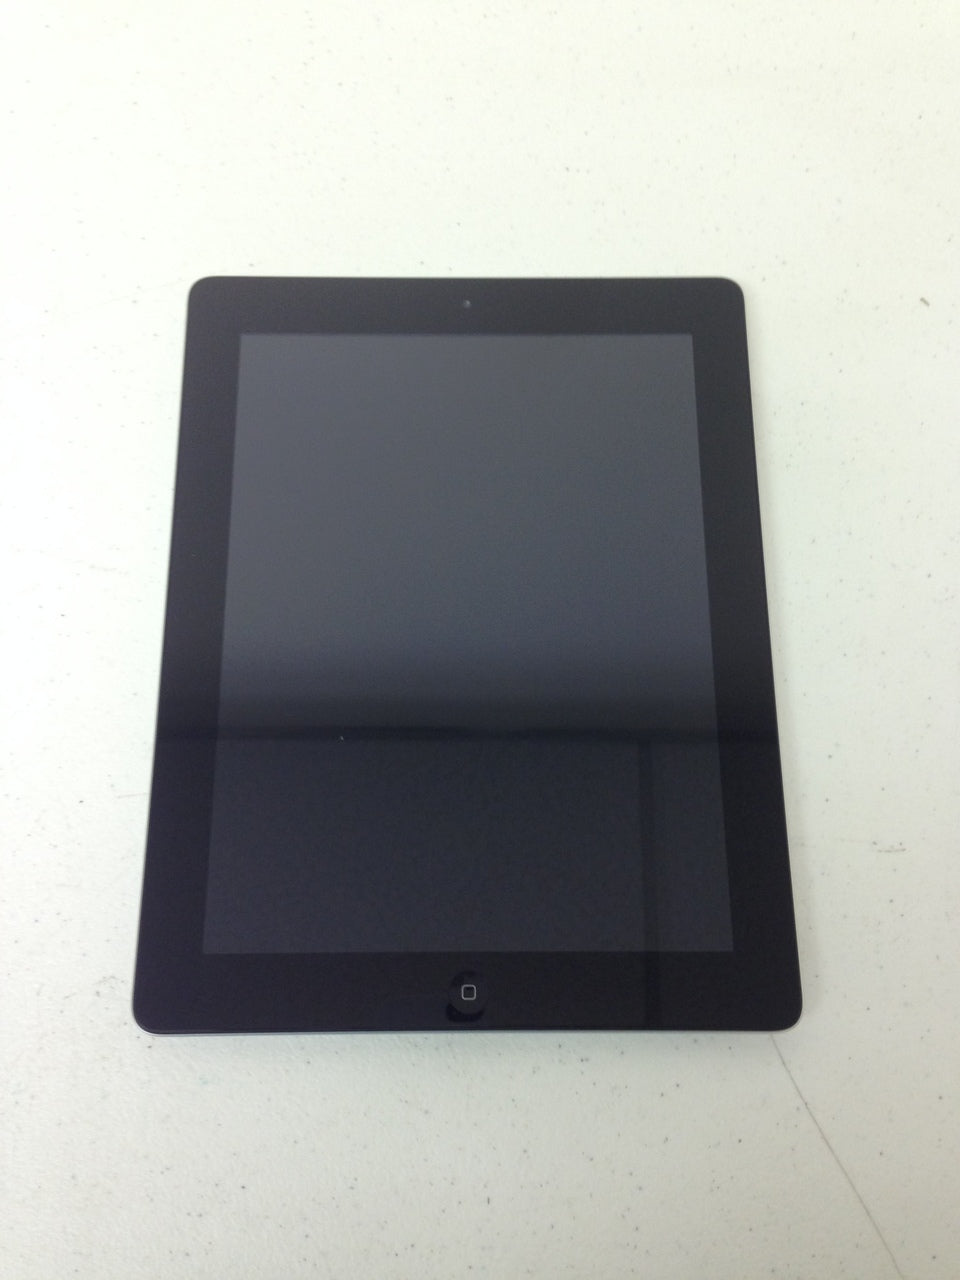 Apple iPad 3 3rd Gen. A1416 MC707LL/A 64GB WiFi Tablet, Black